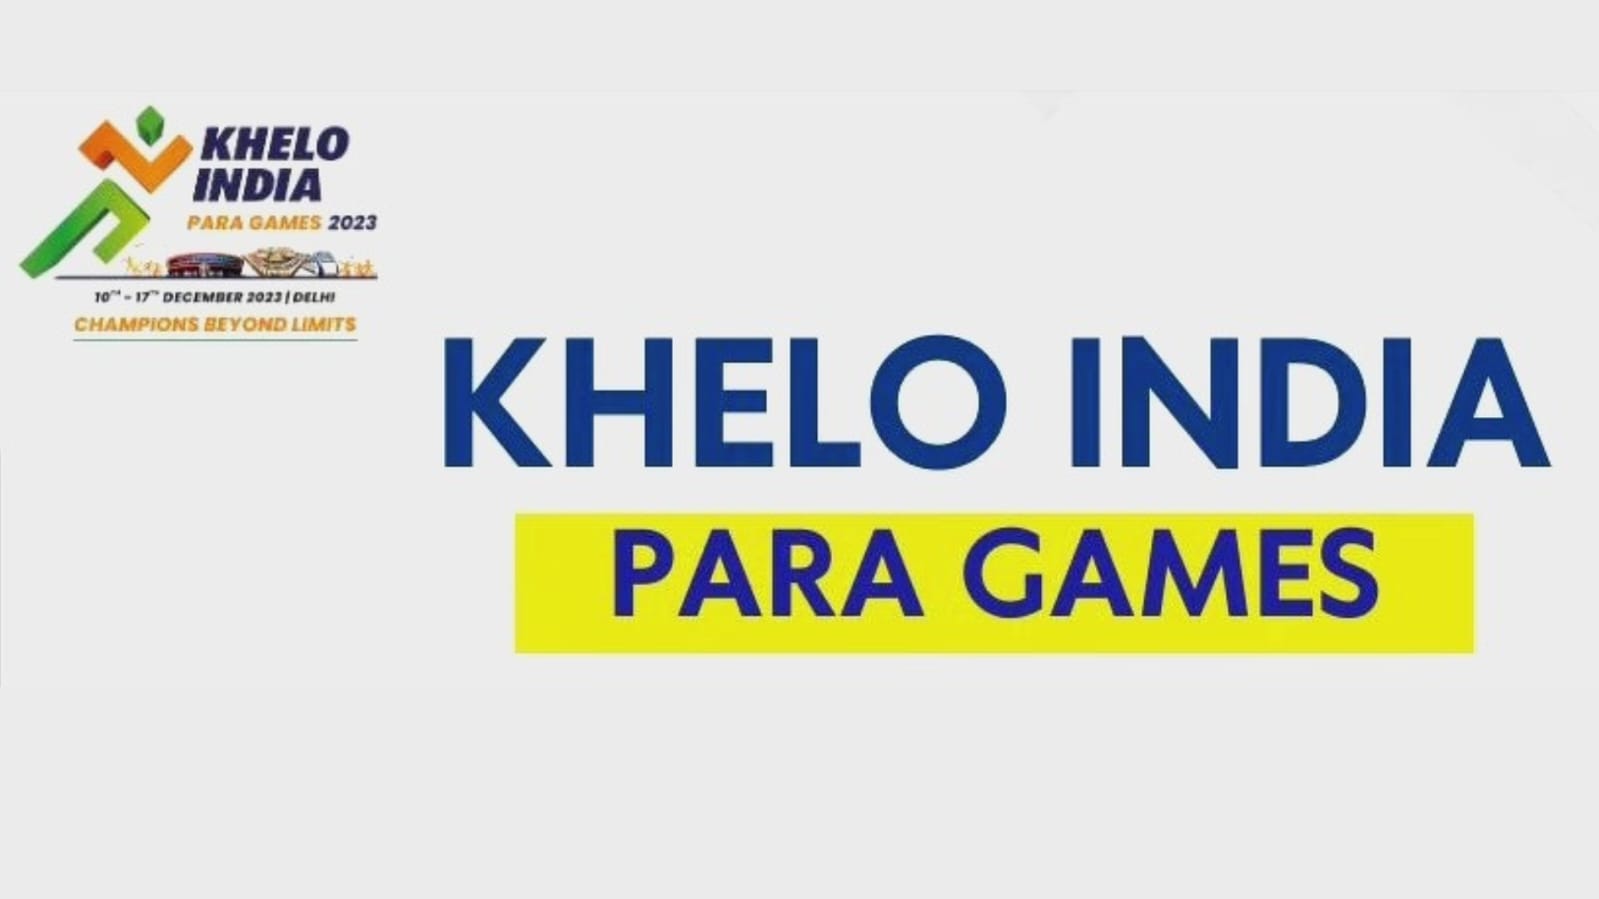 Western force Gujarat and Maharashtra shine bright at inaugural Khelo India Para Games 2023